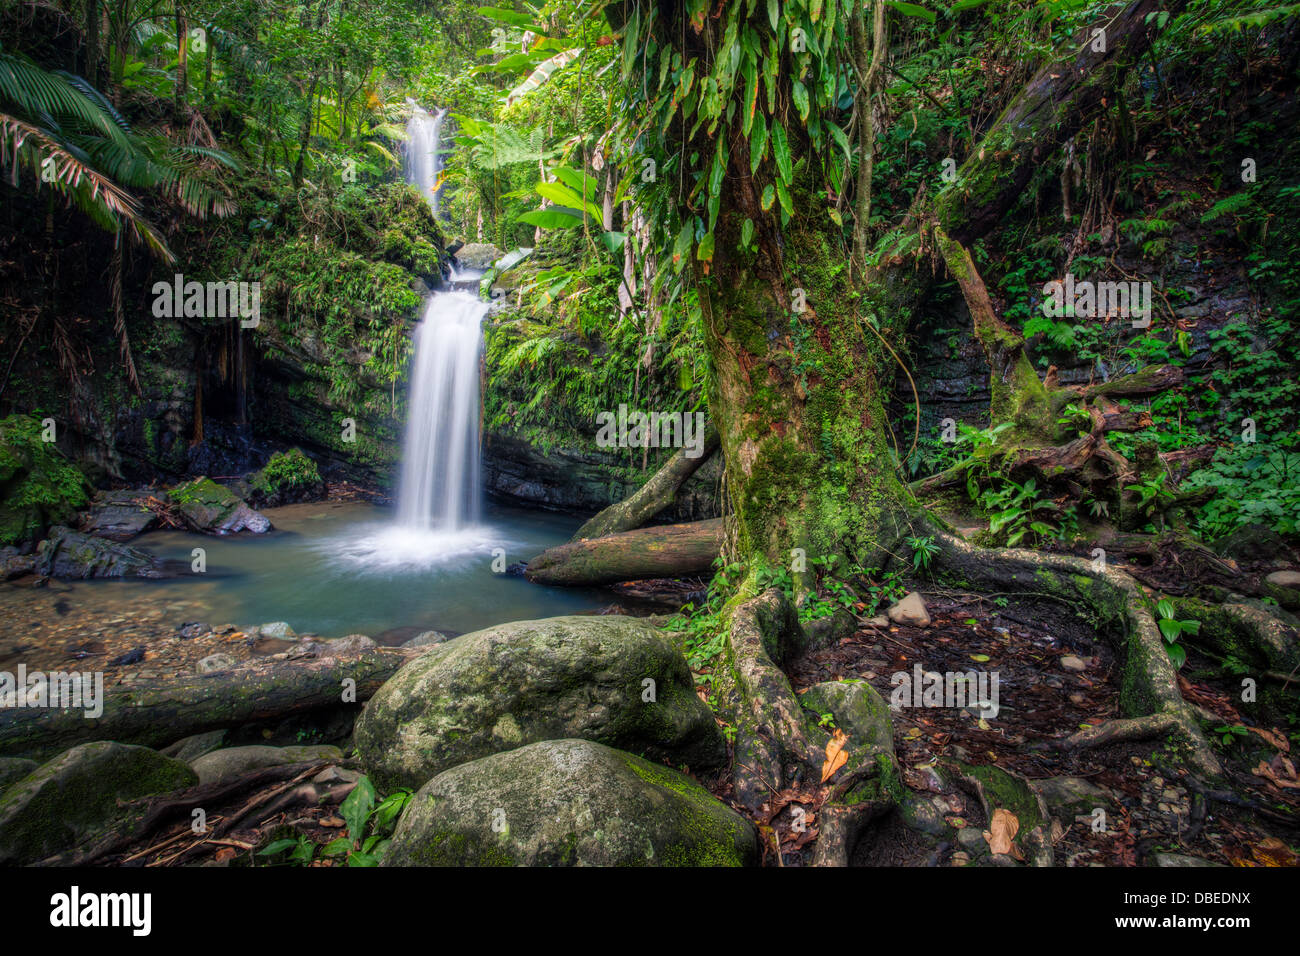 Cubiertos de musgo de árbol cerca de Juan Diego cae en el bosque tropical de El Yunque, Puerto Rico. Foto de stock